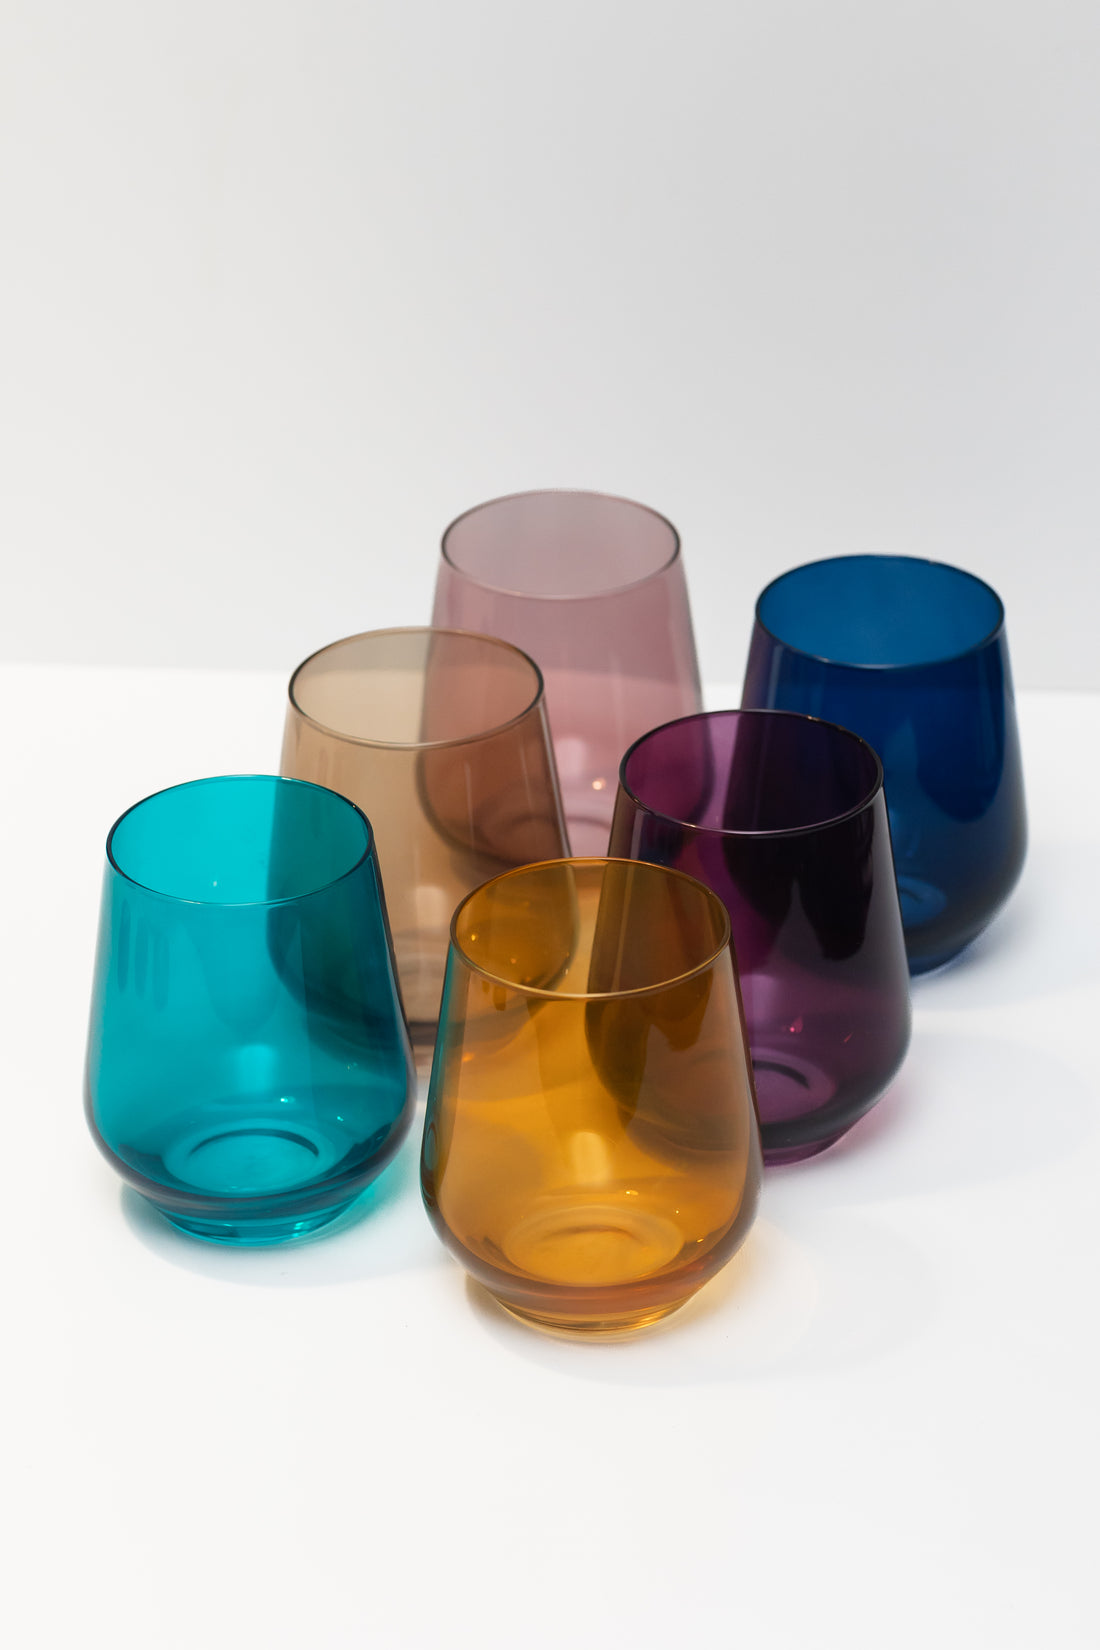 Estelle Colored Wine Stemware - Set of 6 {Lavender} – Estelle Colored Glass